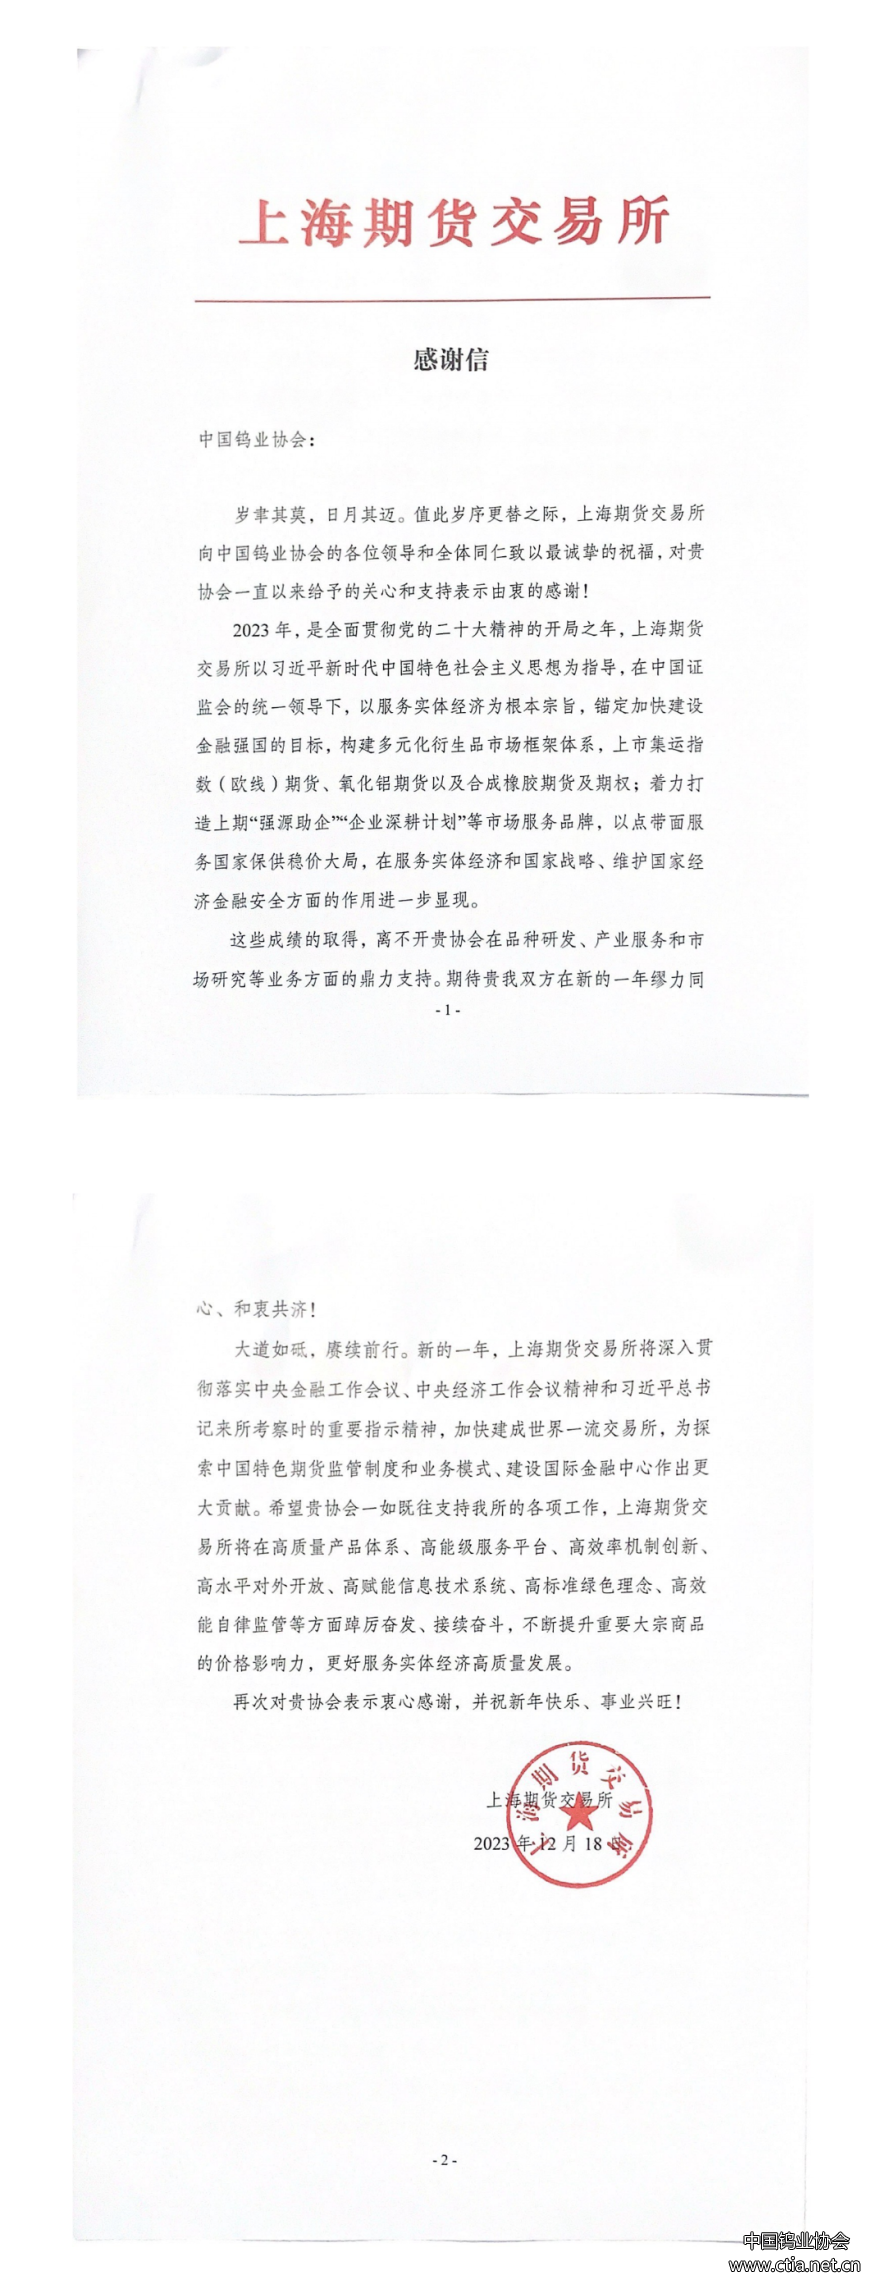 中国钨业协会收到上海期货交易所感谢信